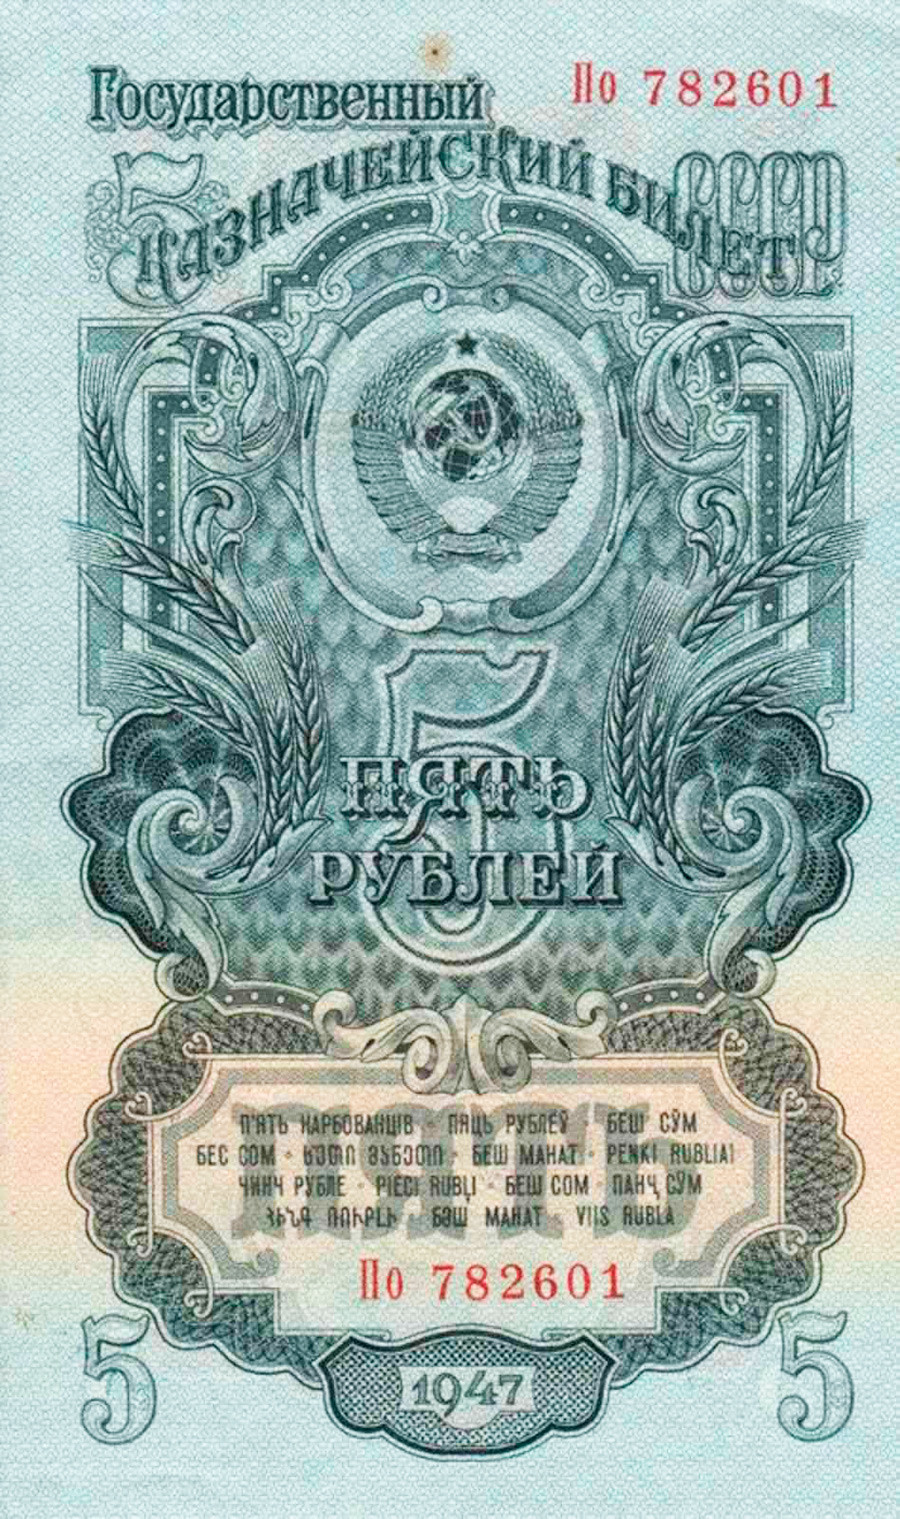 5 rublos de 1947